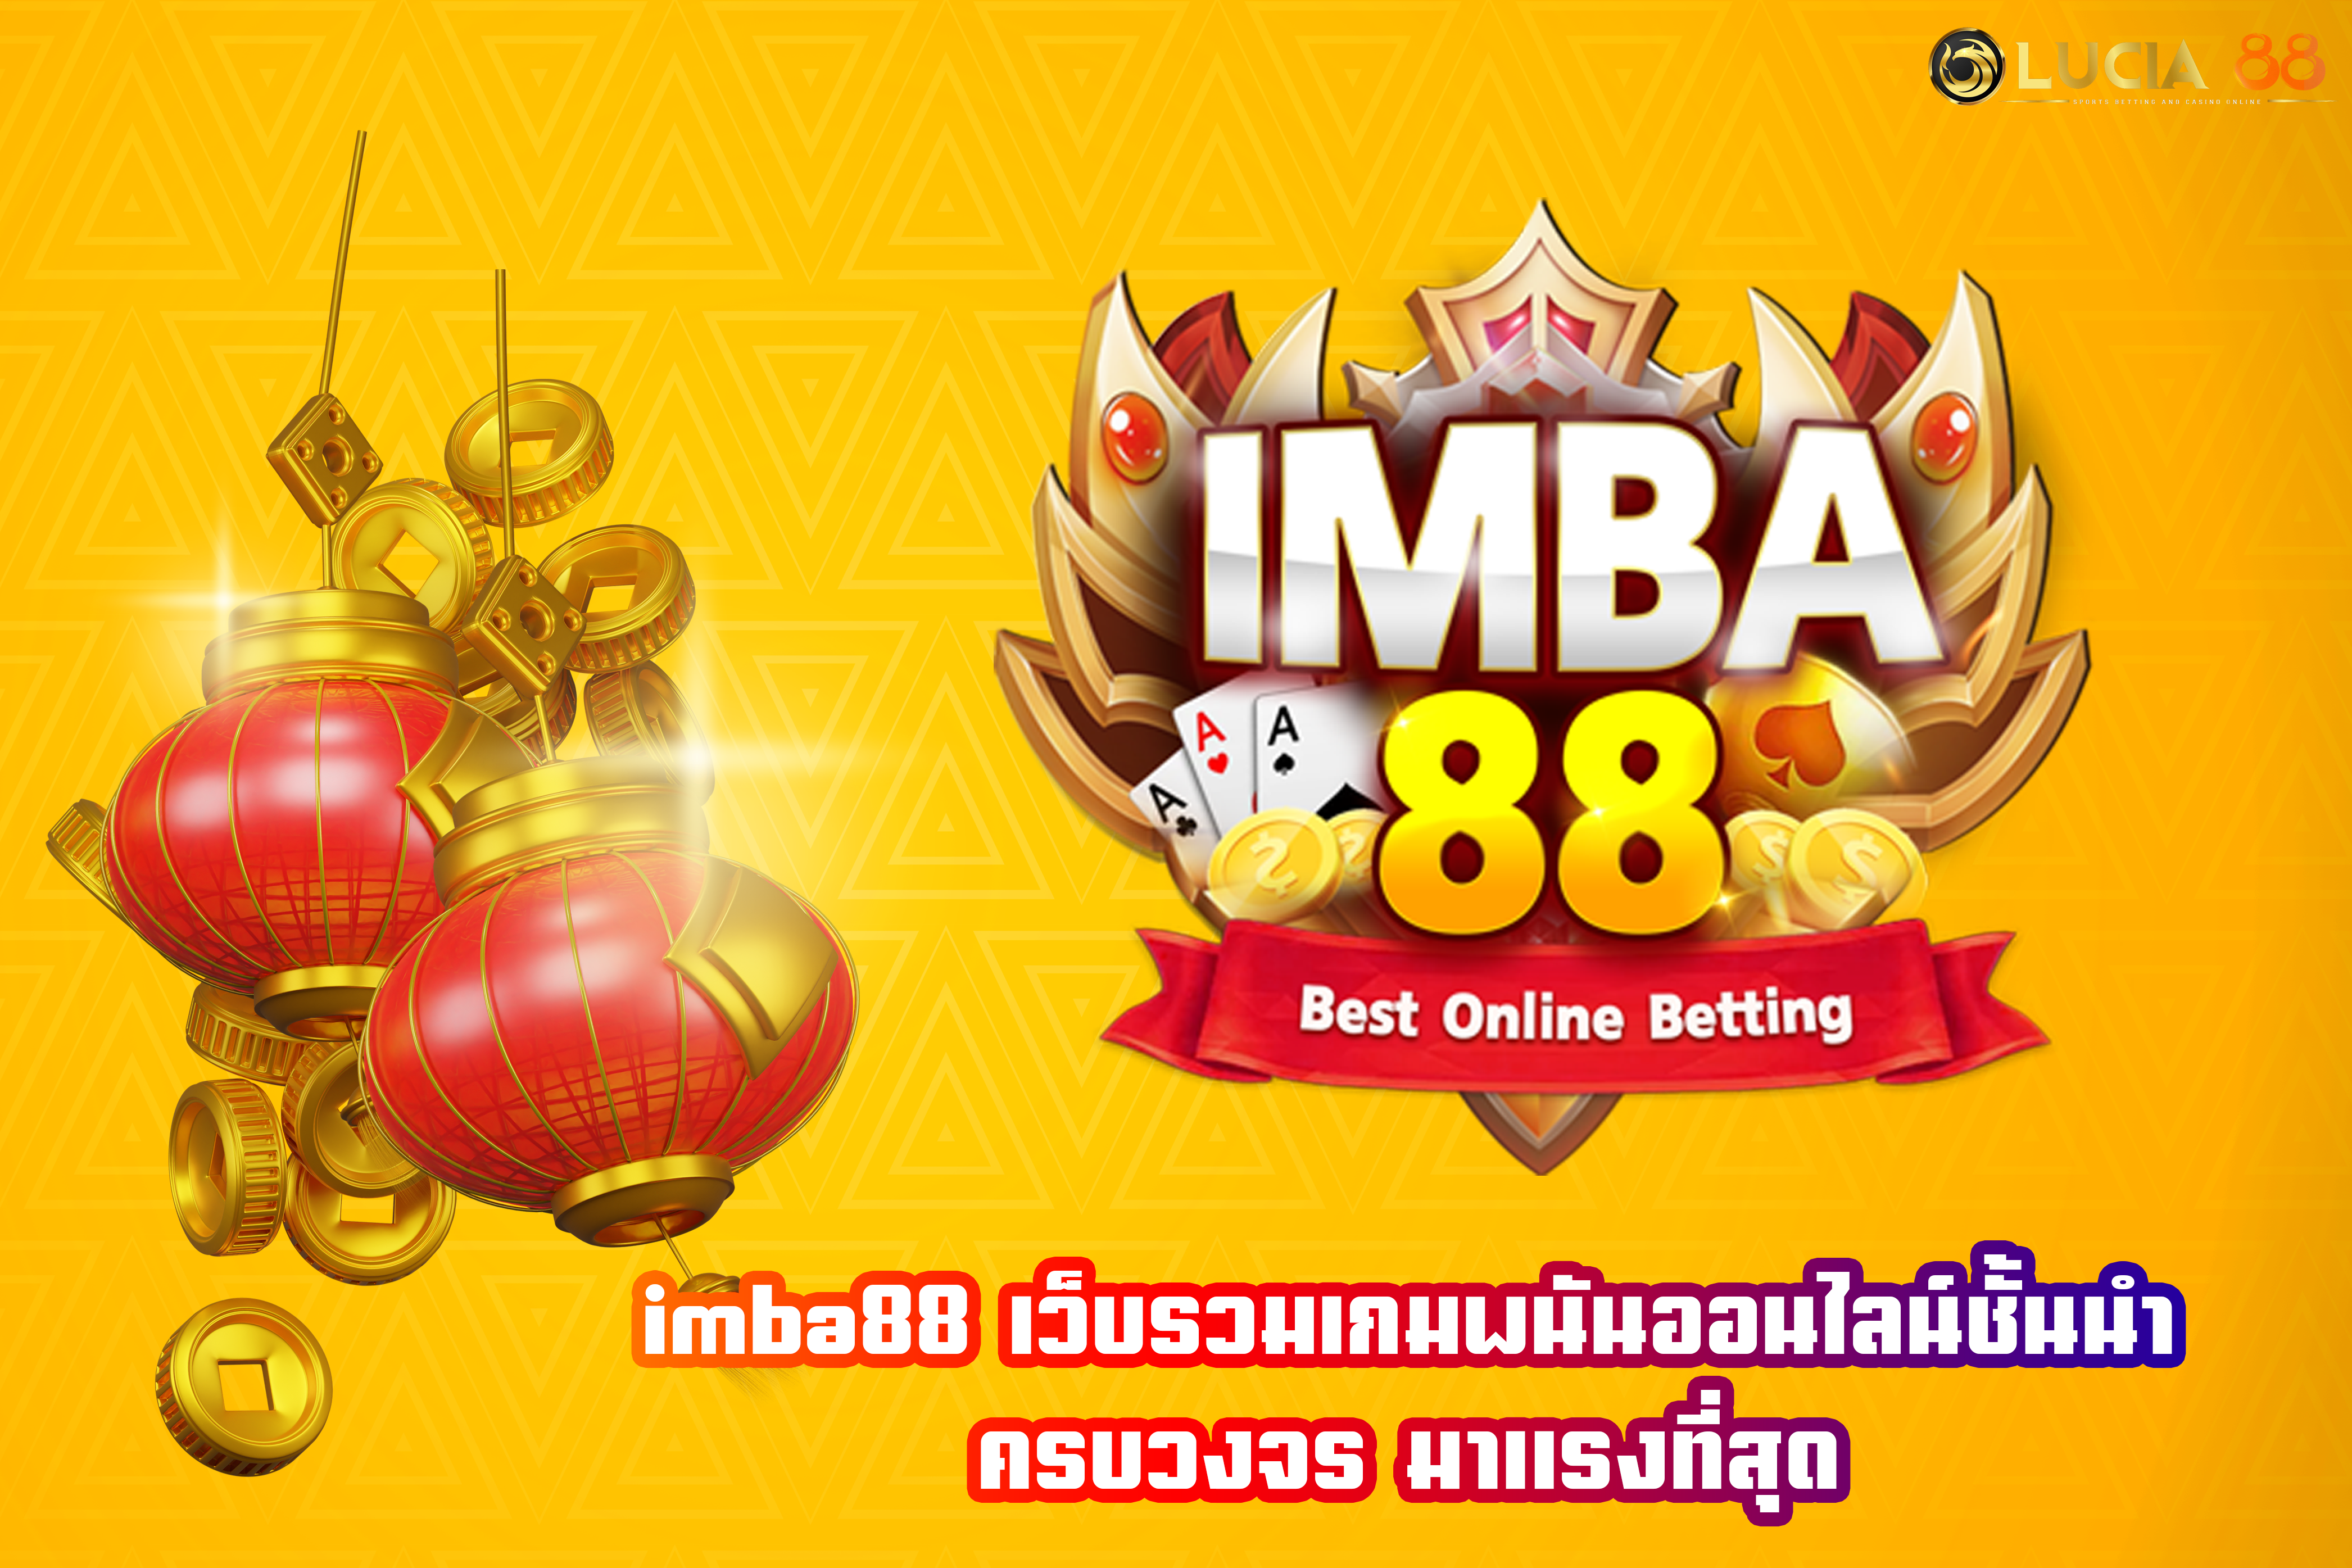 imba88 เว็บรวมเกมพนันออนไลน์ชั้นนำ ครบวงจร มาแรงที่สุด